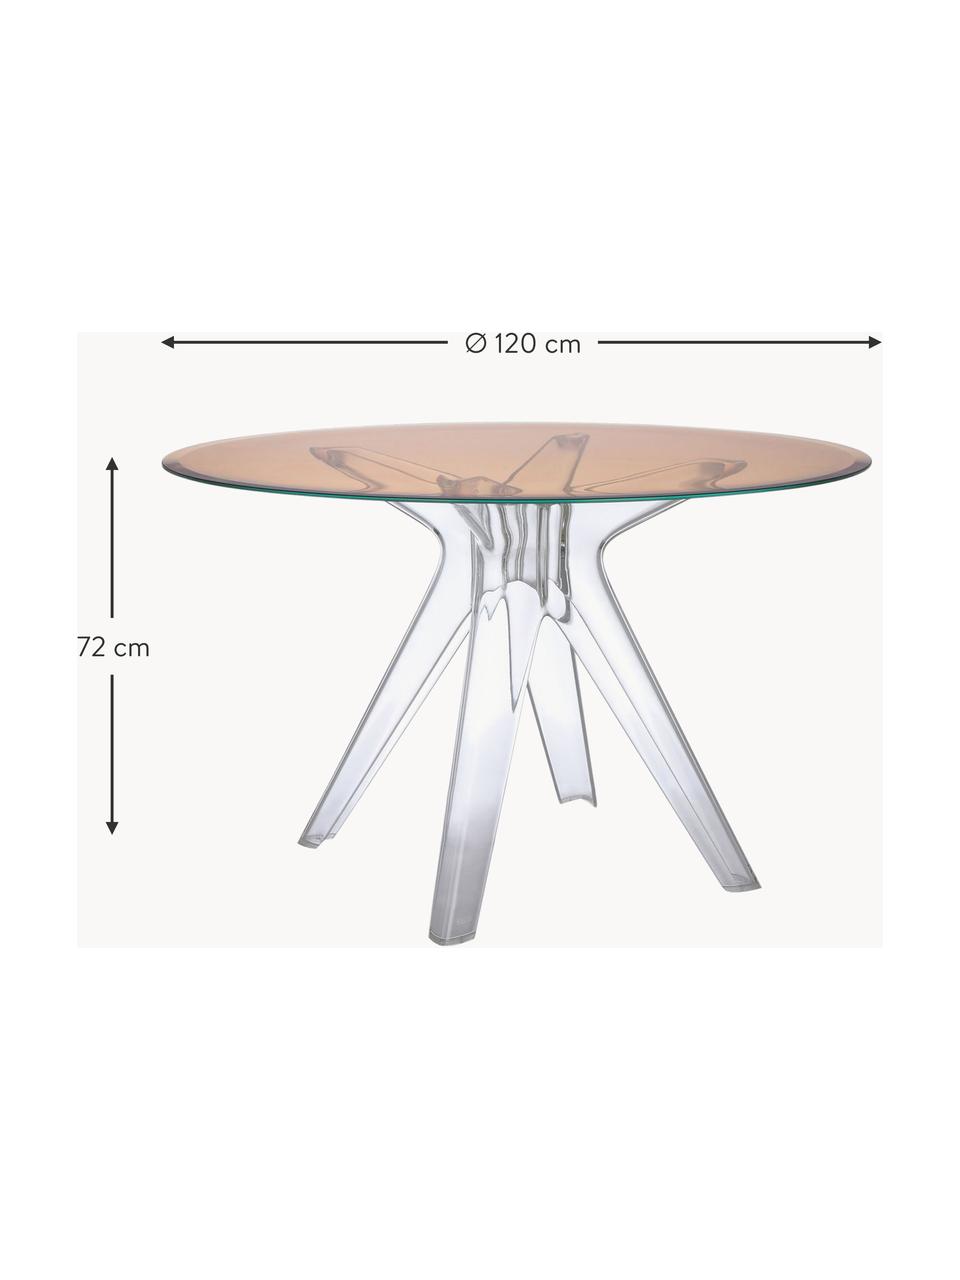 Runder Esstisch Sir Gio, Ø 120 cm, Tischplatte: Verbundglas, Gestell: Kunststoff, Peach, Transparent, Ø 120 x H 72 cm